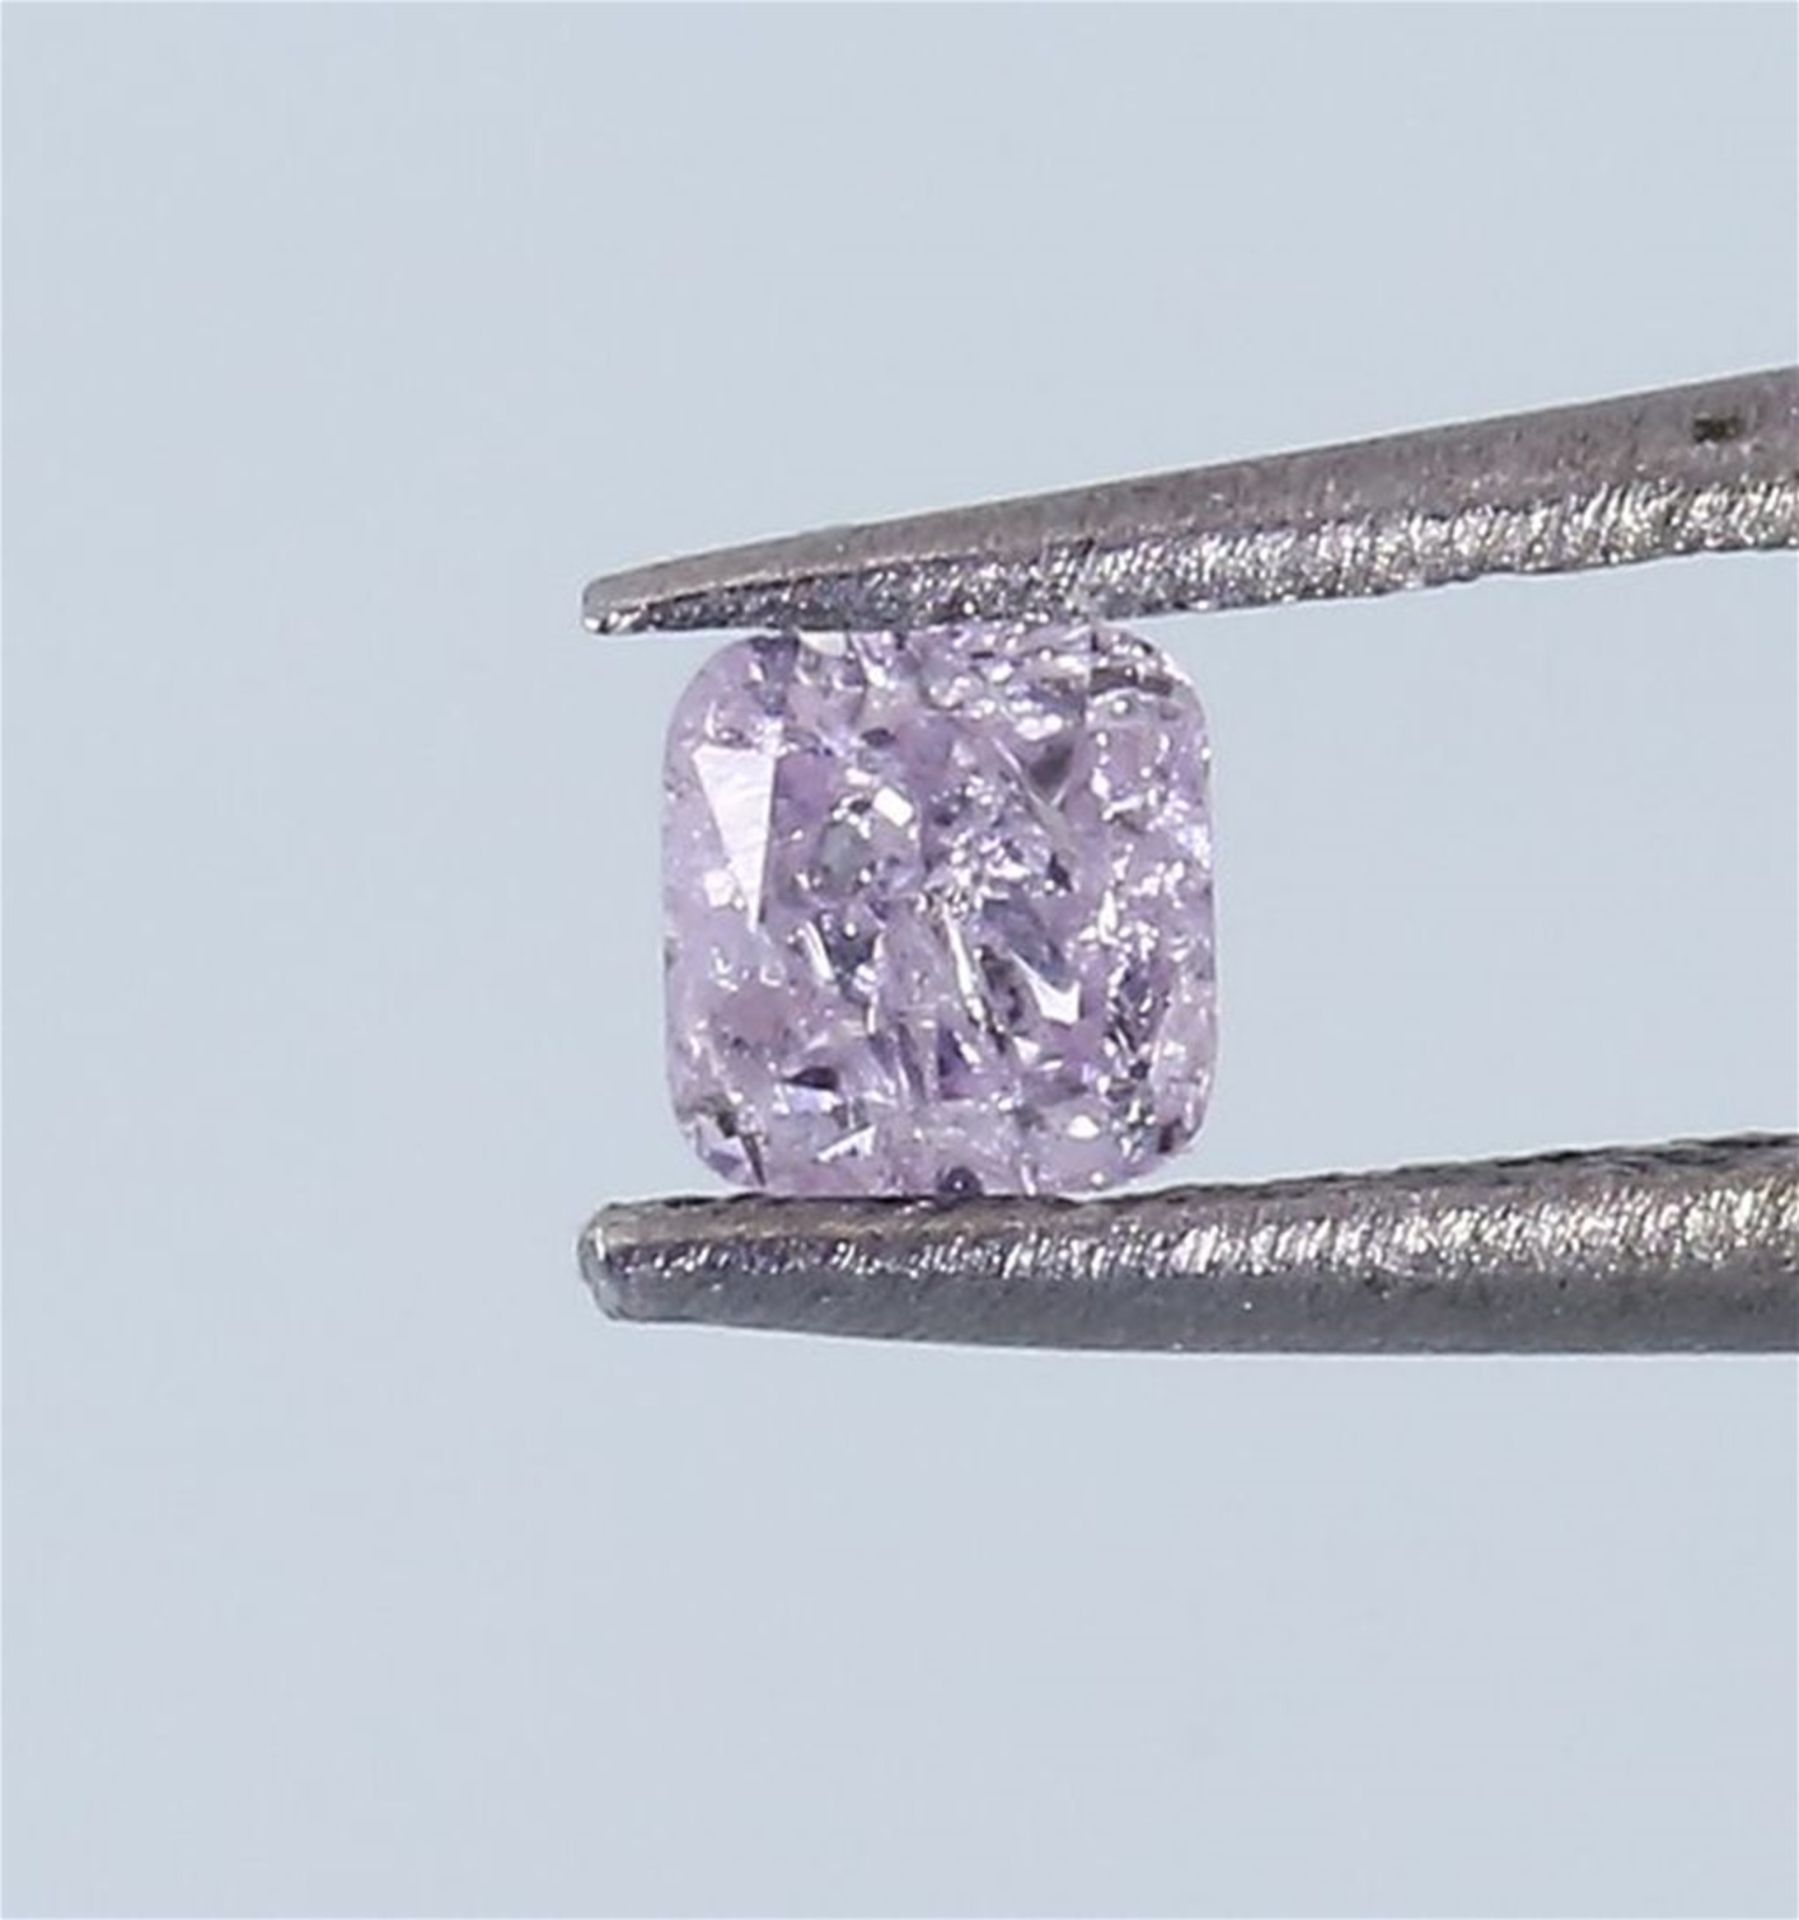 IGI Certified 0.12 ct. Fancy Pink Diamond - I2